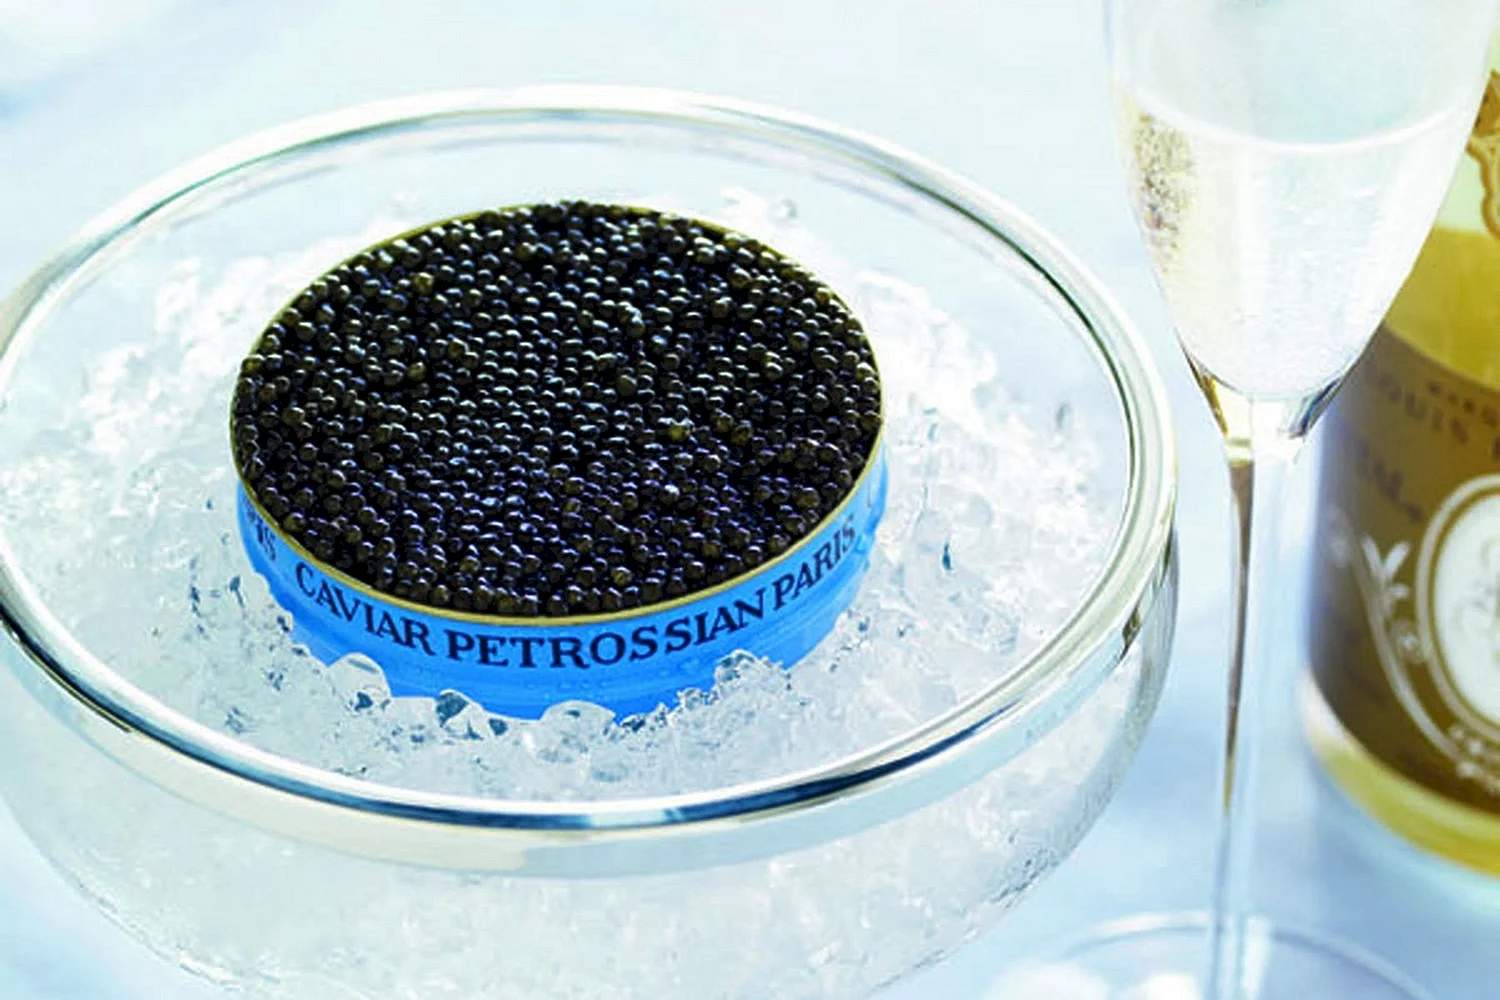 Petrossian Caviar